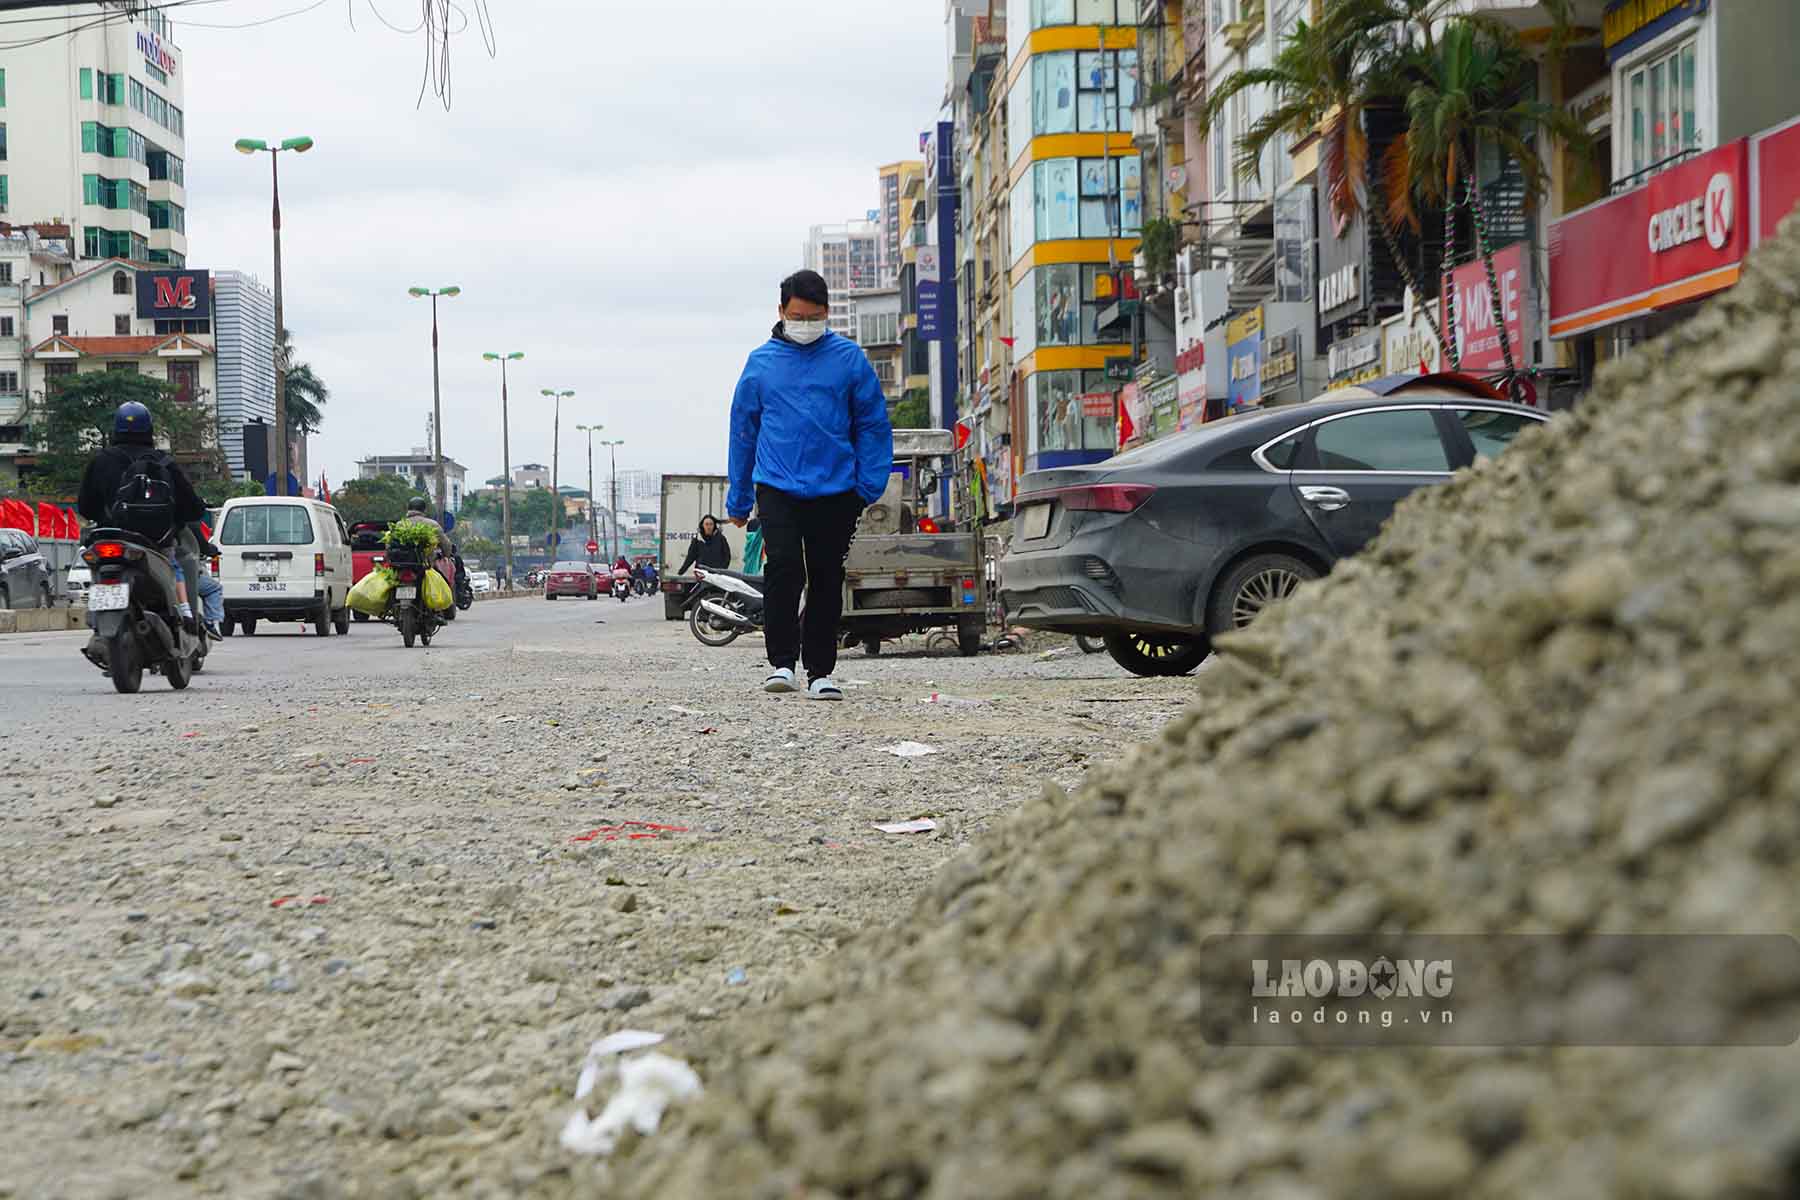 Theo người dân tại khu vực này, dự án do phải tiến hành đào xới, thi công trên đoạn thuộc tuyến Kim Đông nên gây ảnh hưởng đến giao thông và môi trường cũng như sinh kế của người dân.